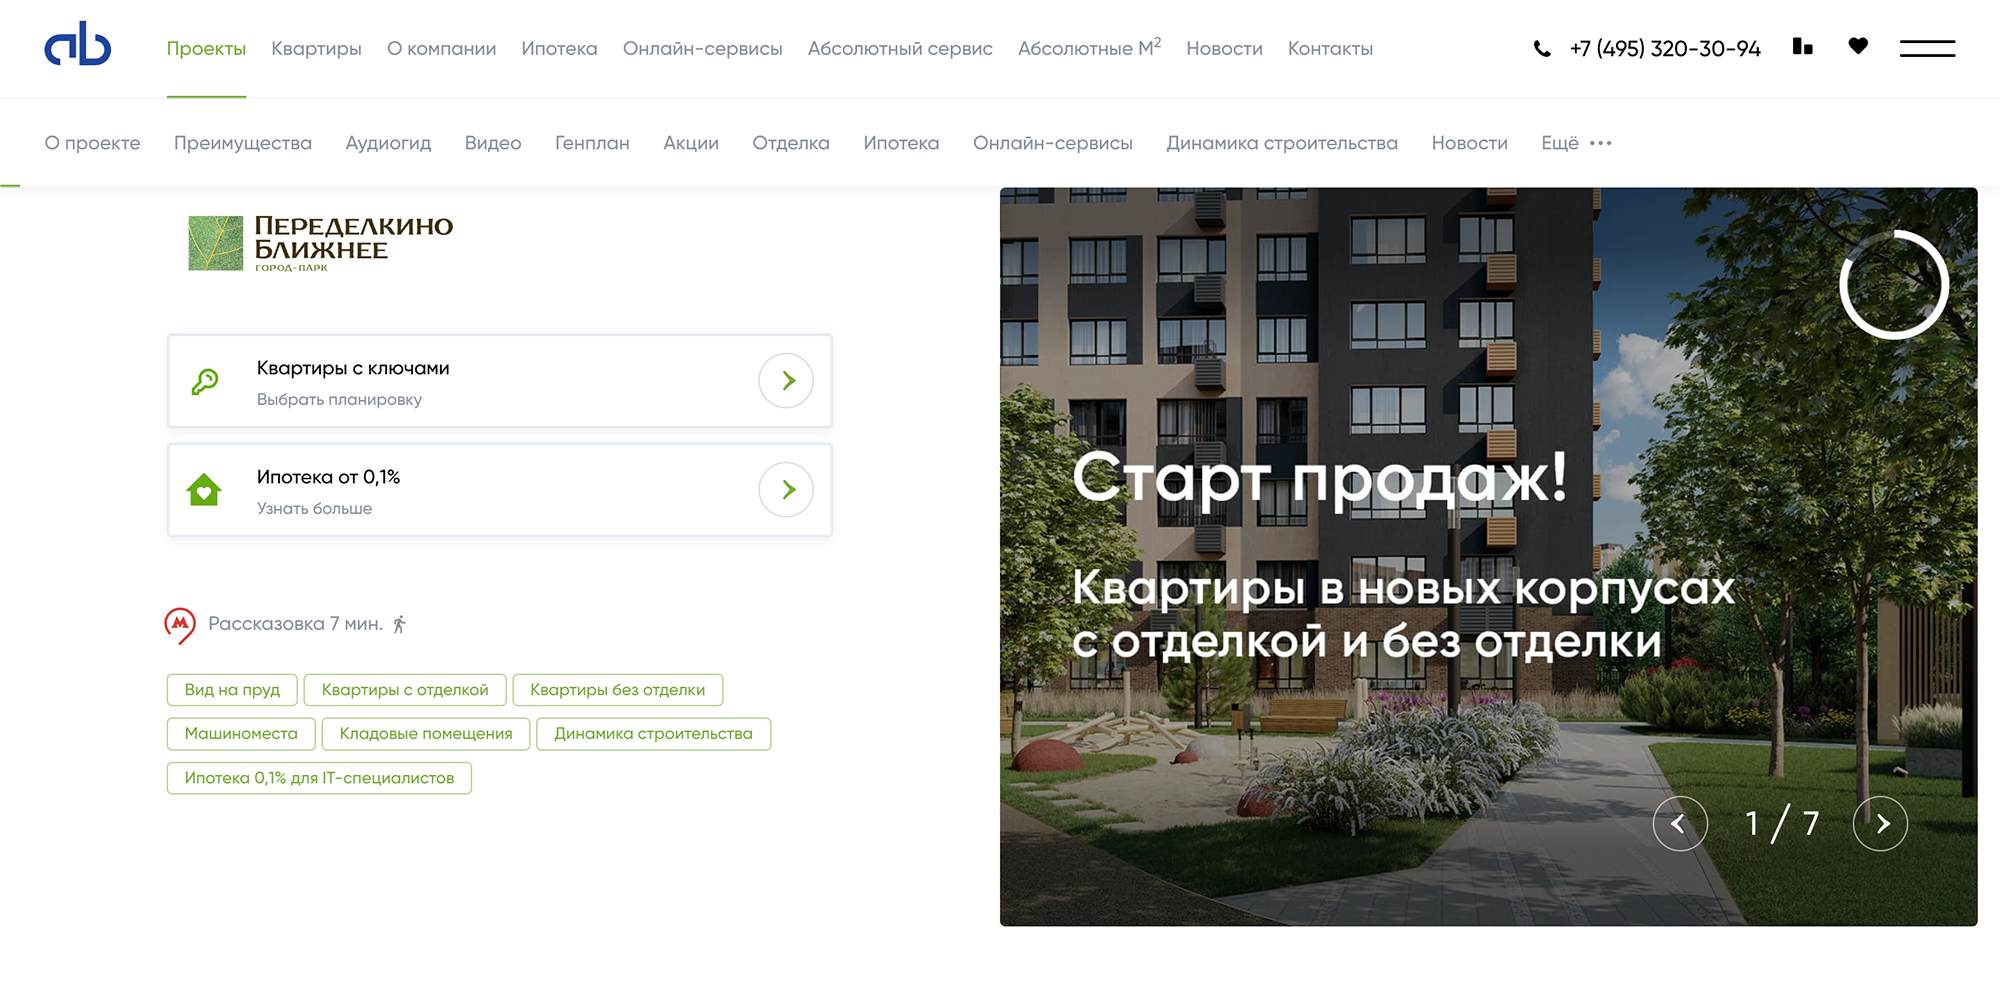 На сайте ЖК застройщики обычно указывают, что есть возможность взять субсидированную ипотеку. В моем случае была доступна ставка 0,1%. Источник: absrealty.ru